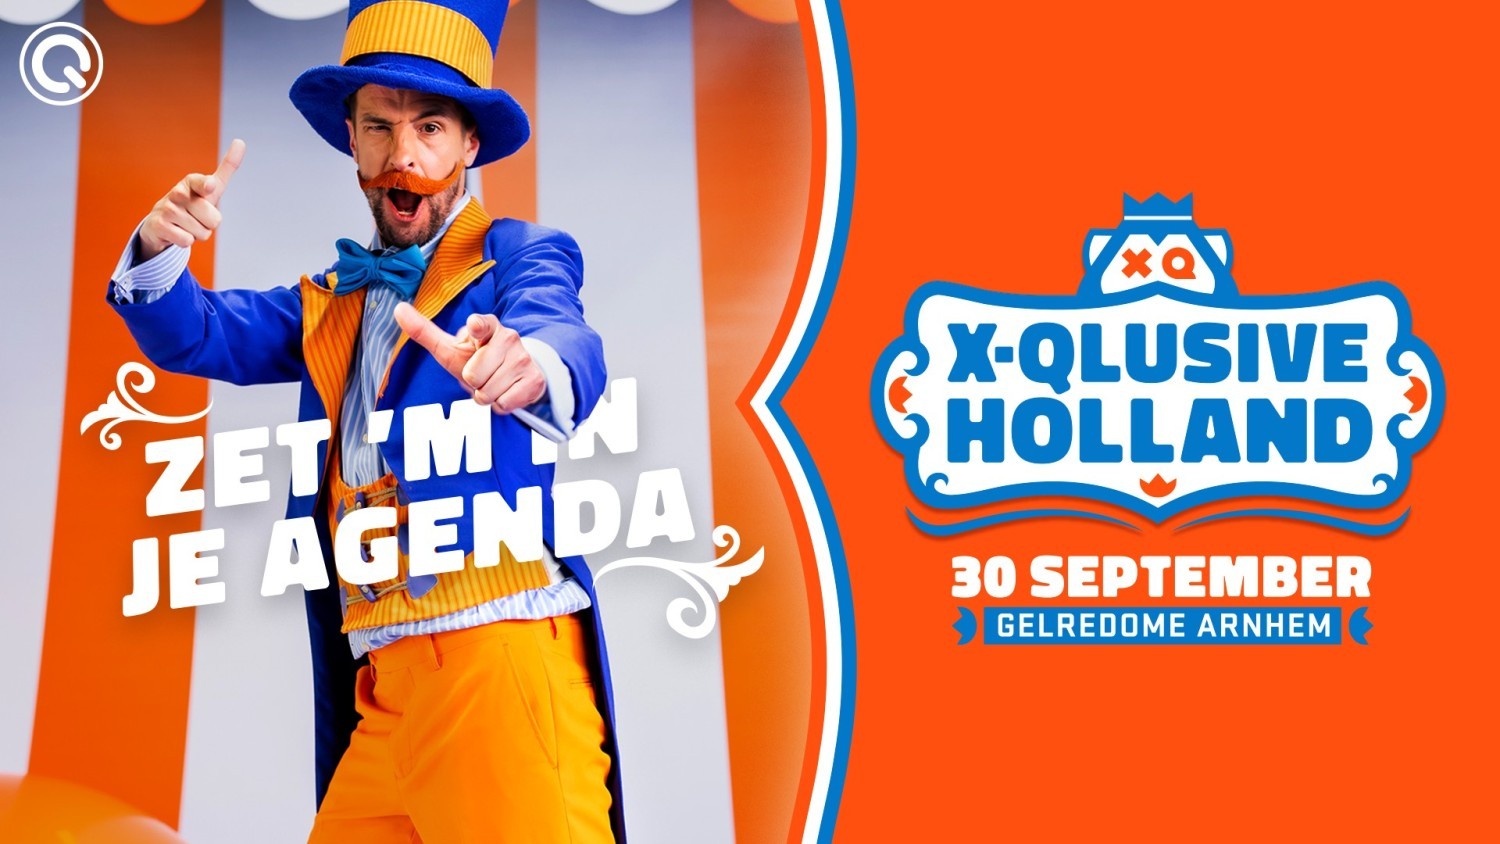 Party nieuws: X-Qlusive Holland terug in de GelreDome